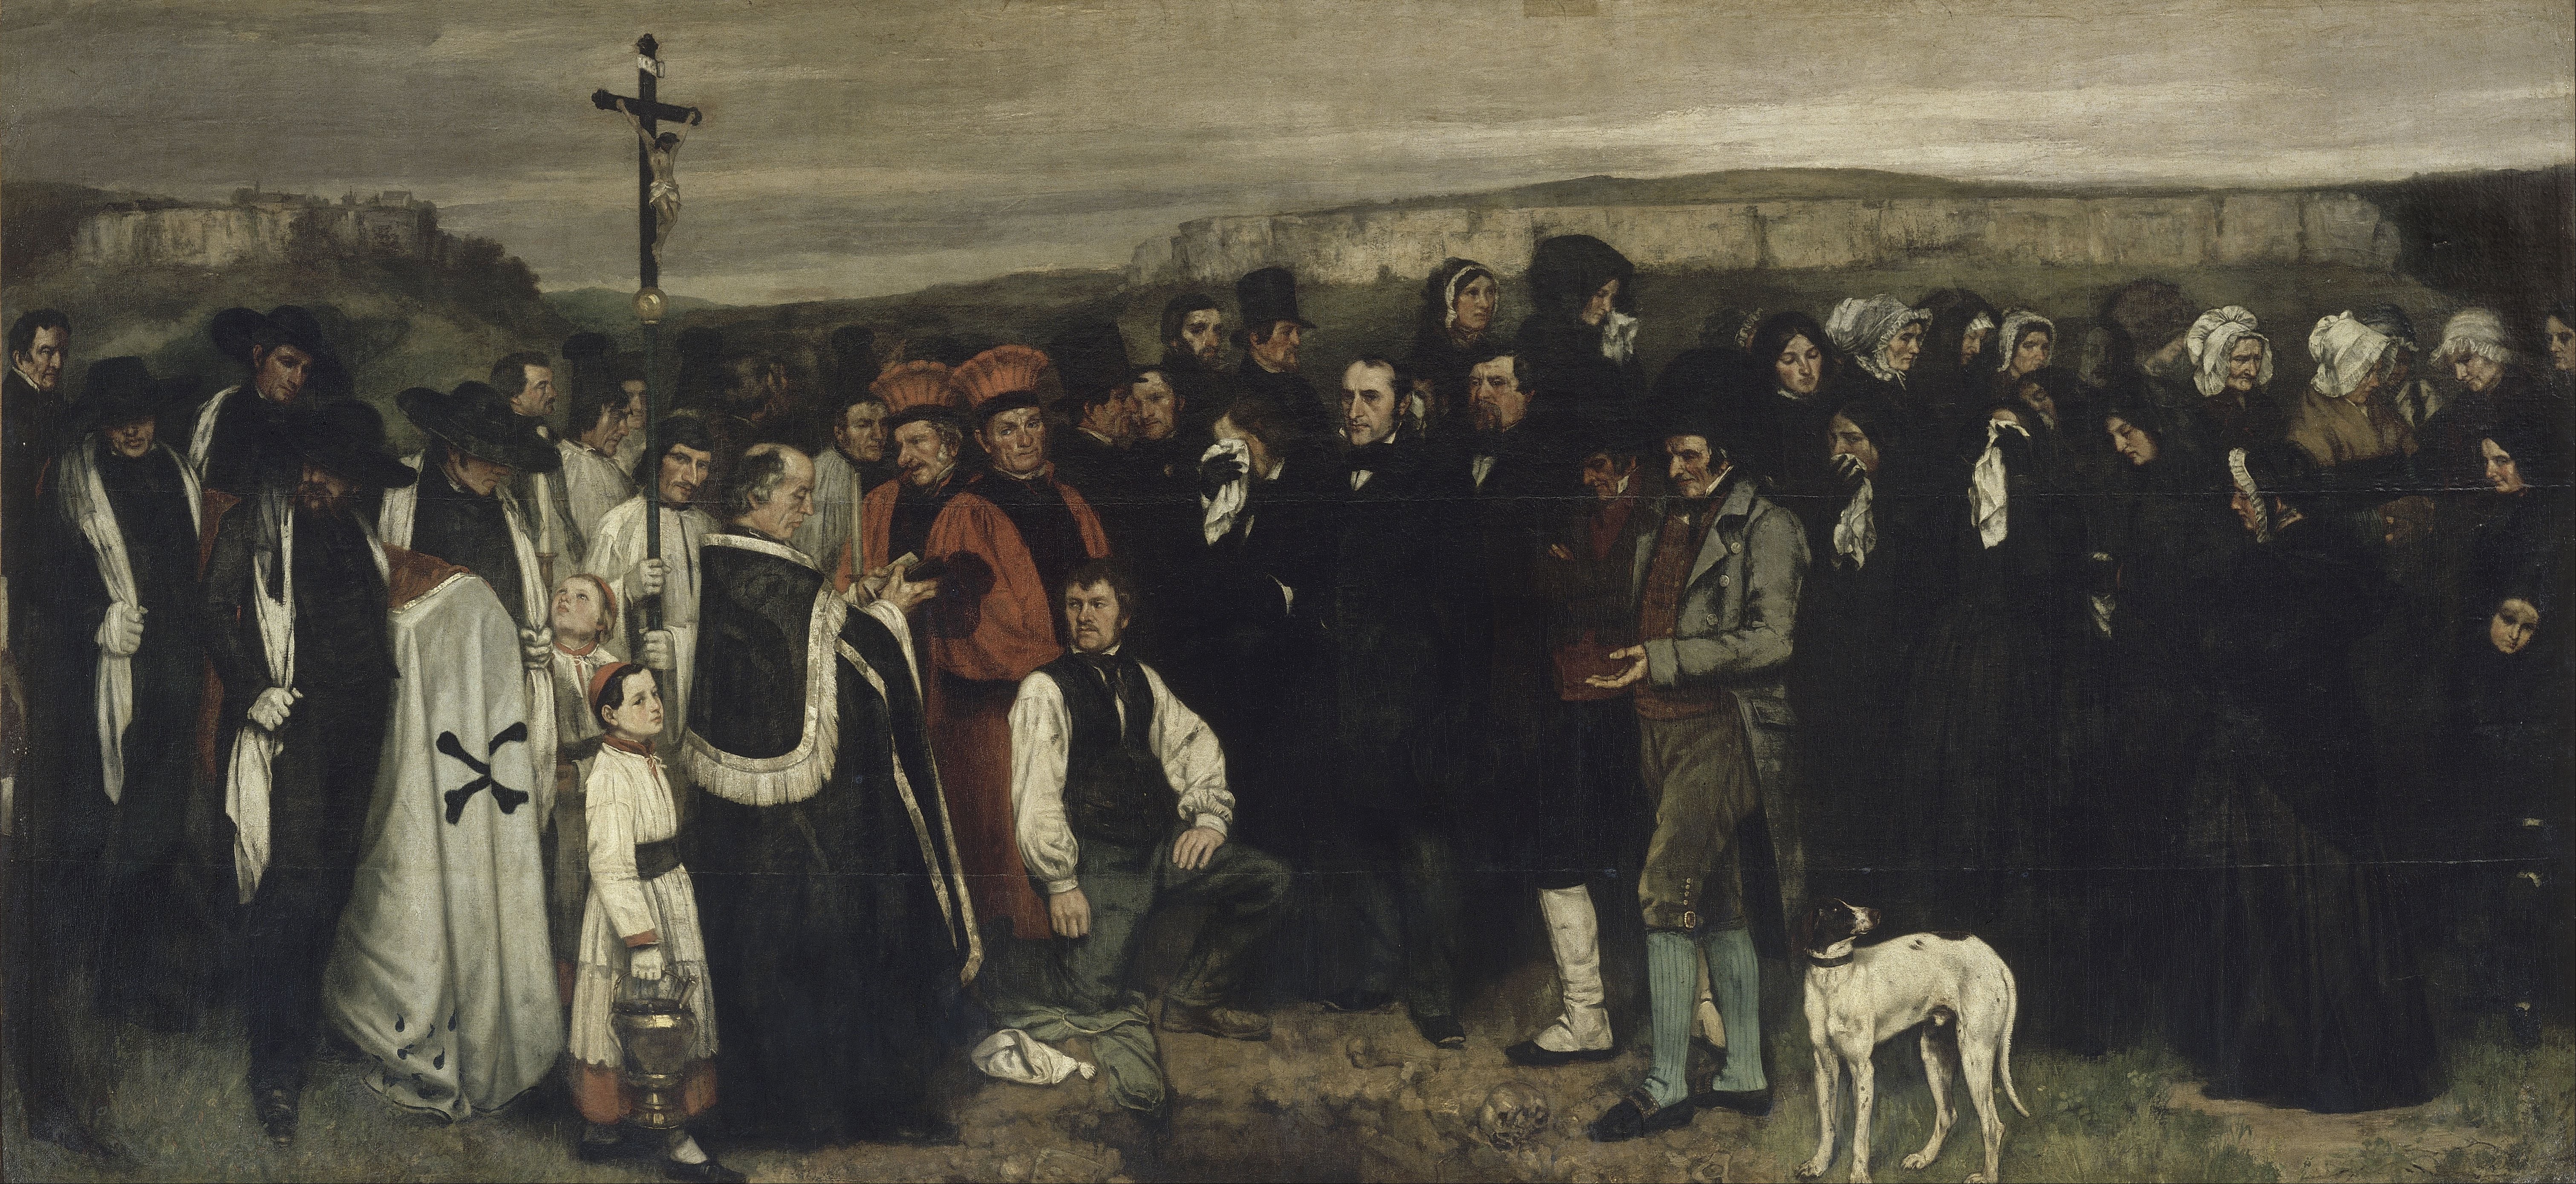 Gustave Courbet - Un enterrement à Ornans, 1849-1850, huile sur toile (Paris, Musée d’Orsay)